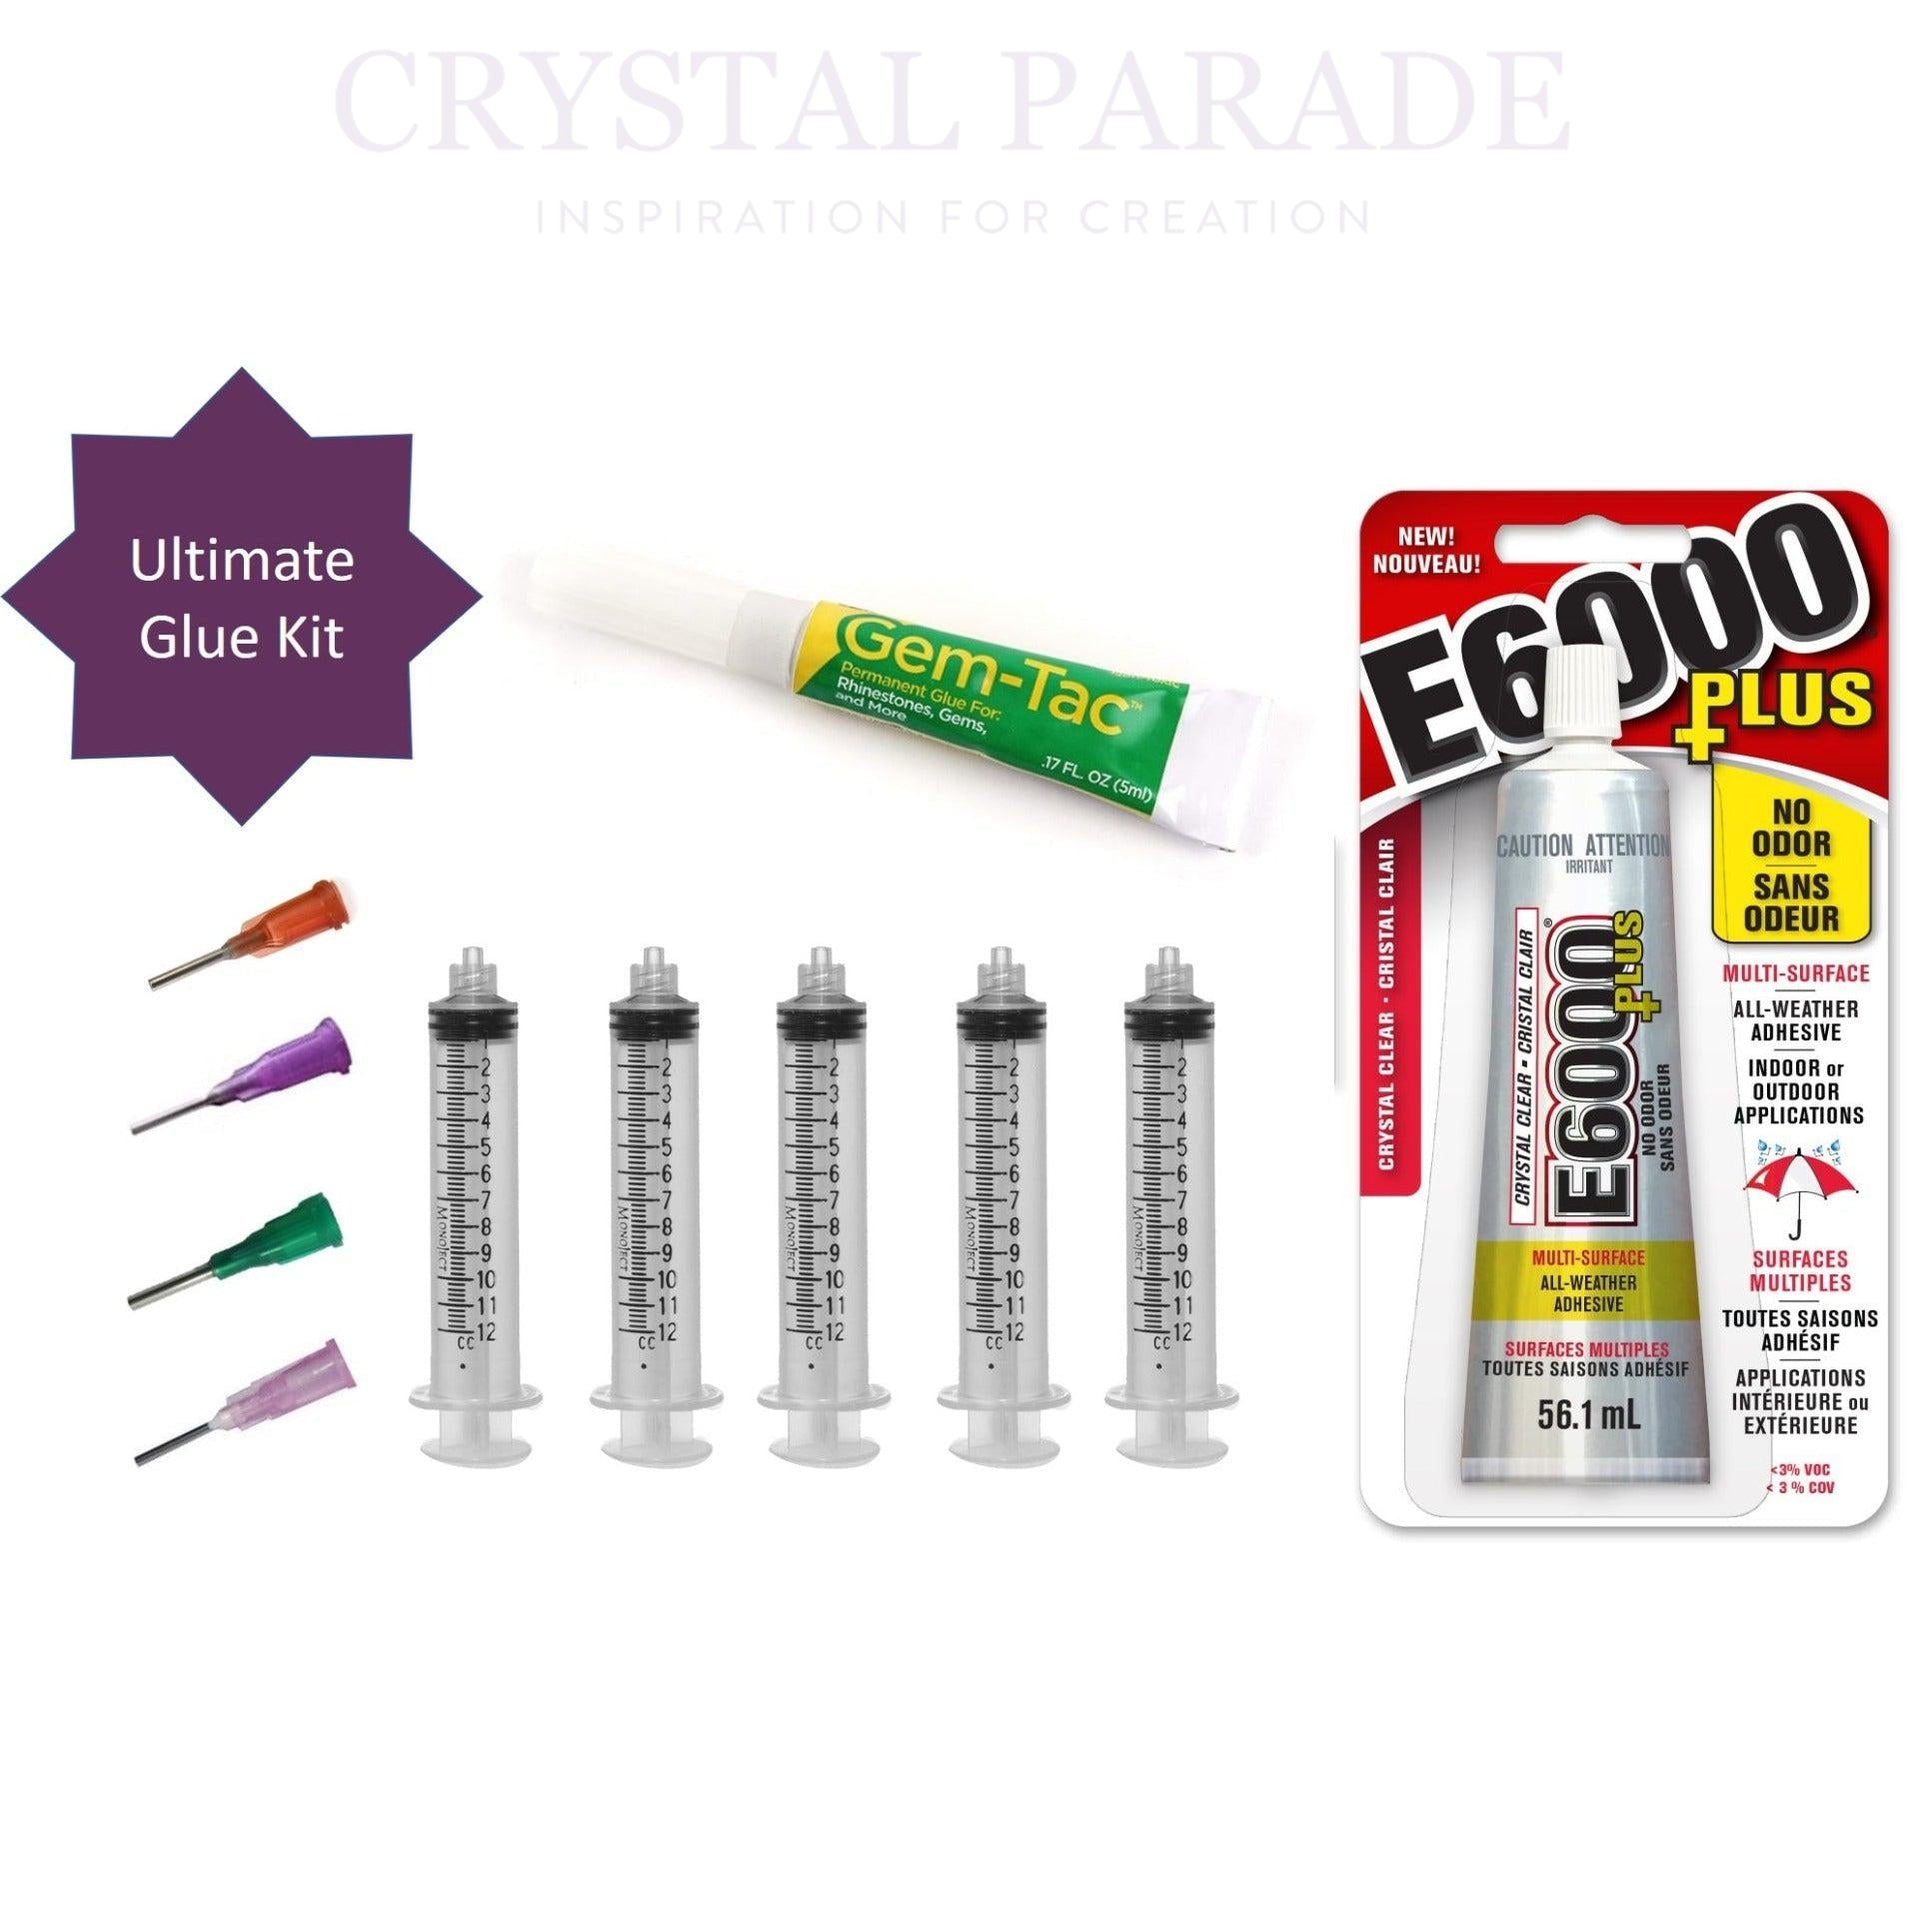 Handy Glue Kit - Gem Tac Adhesive, Crystal Parade